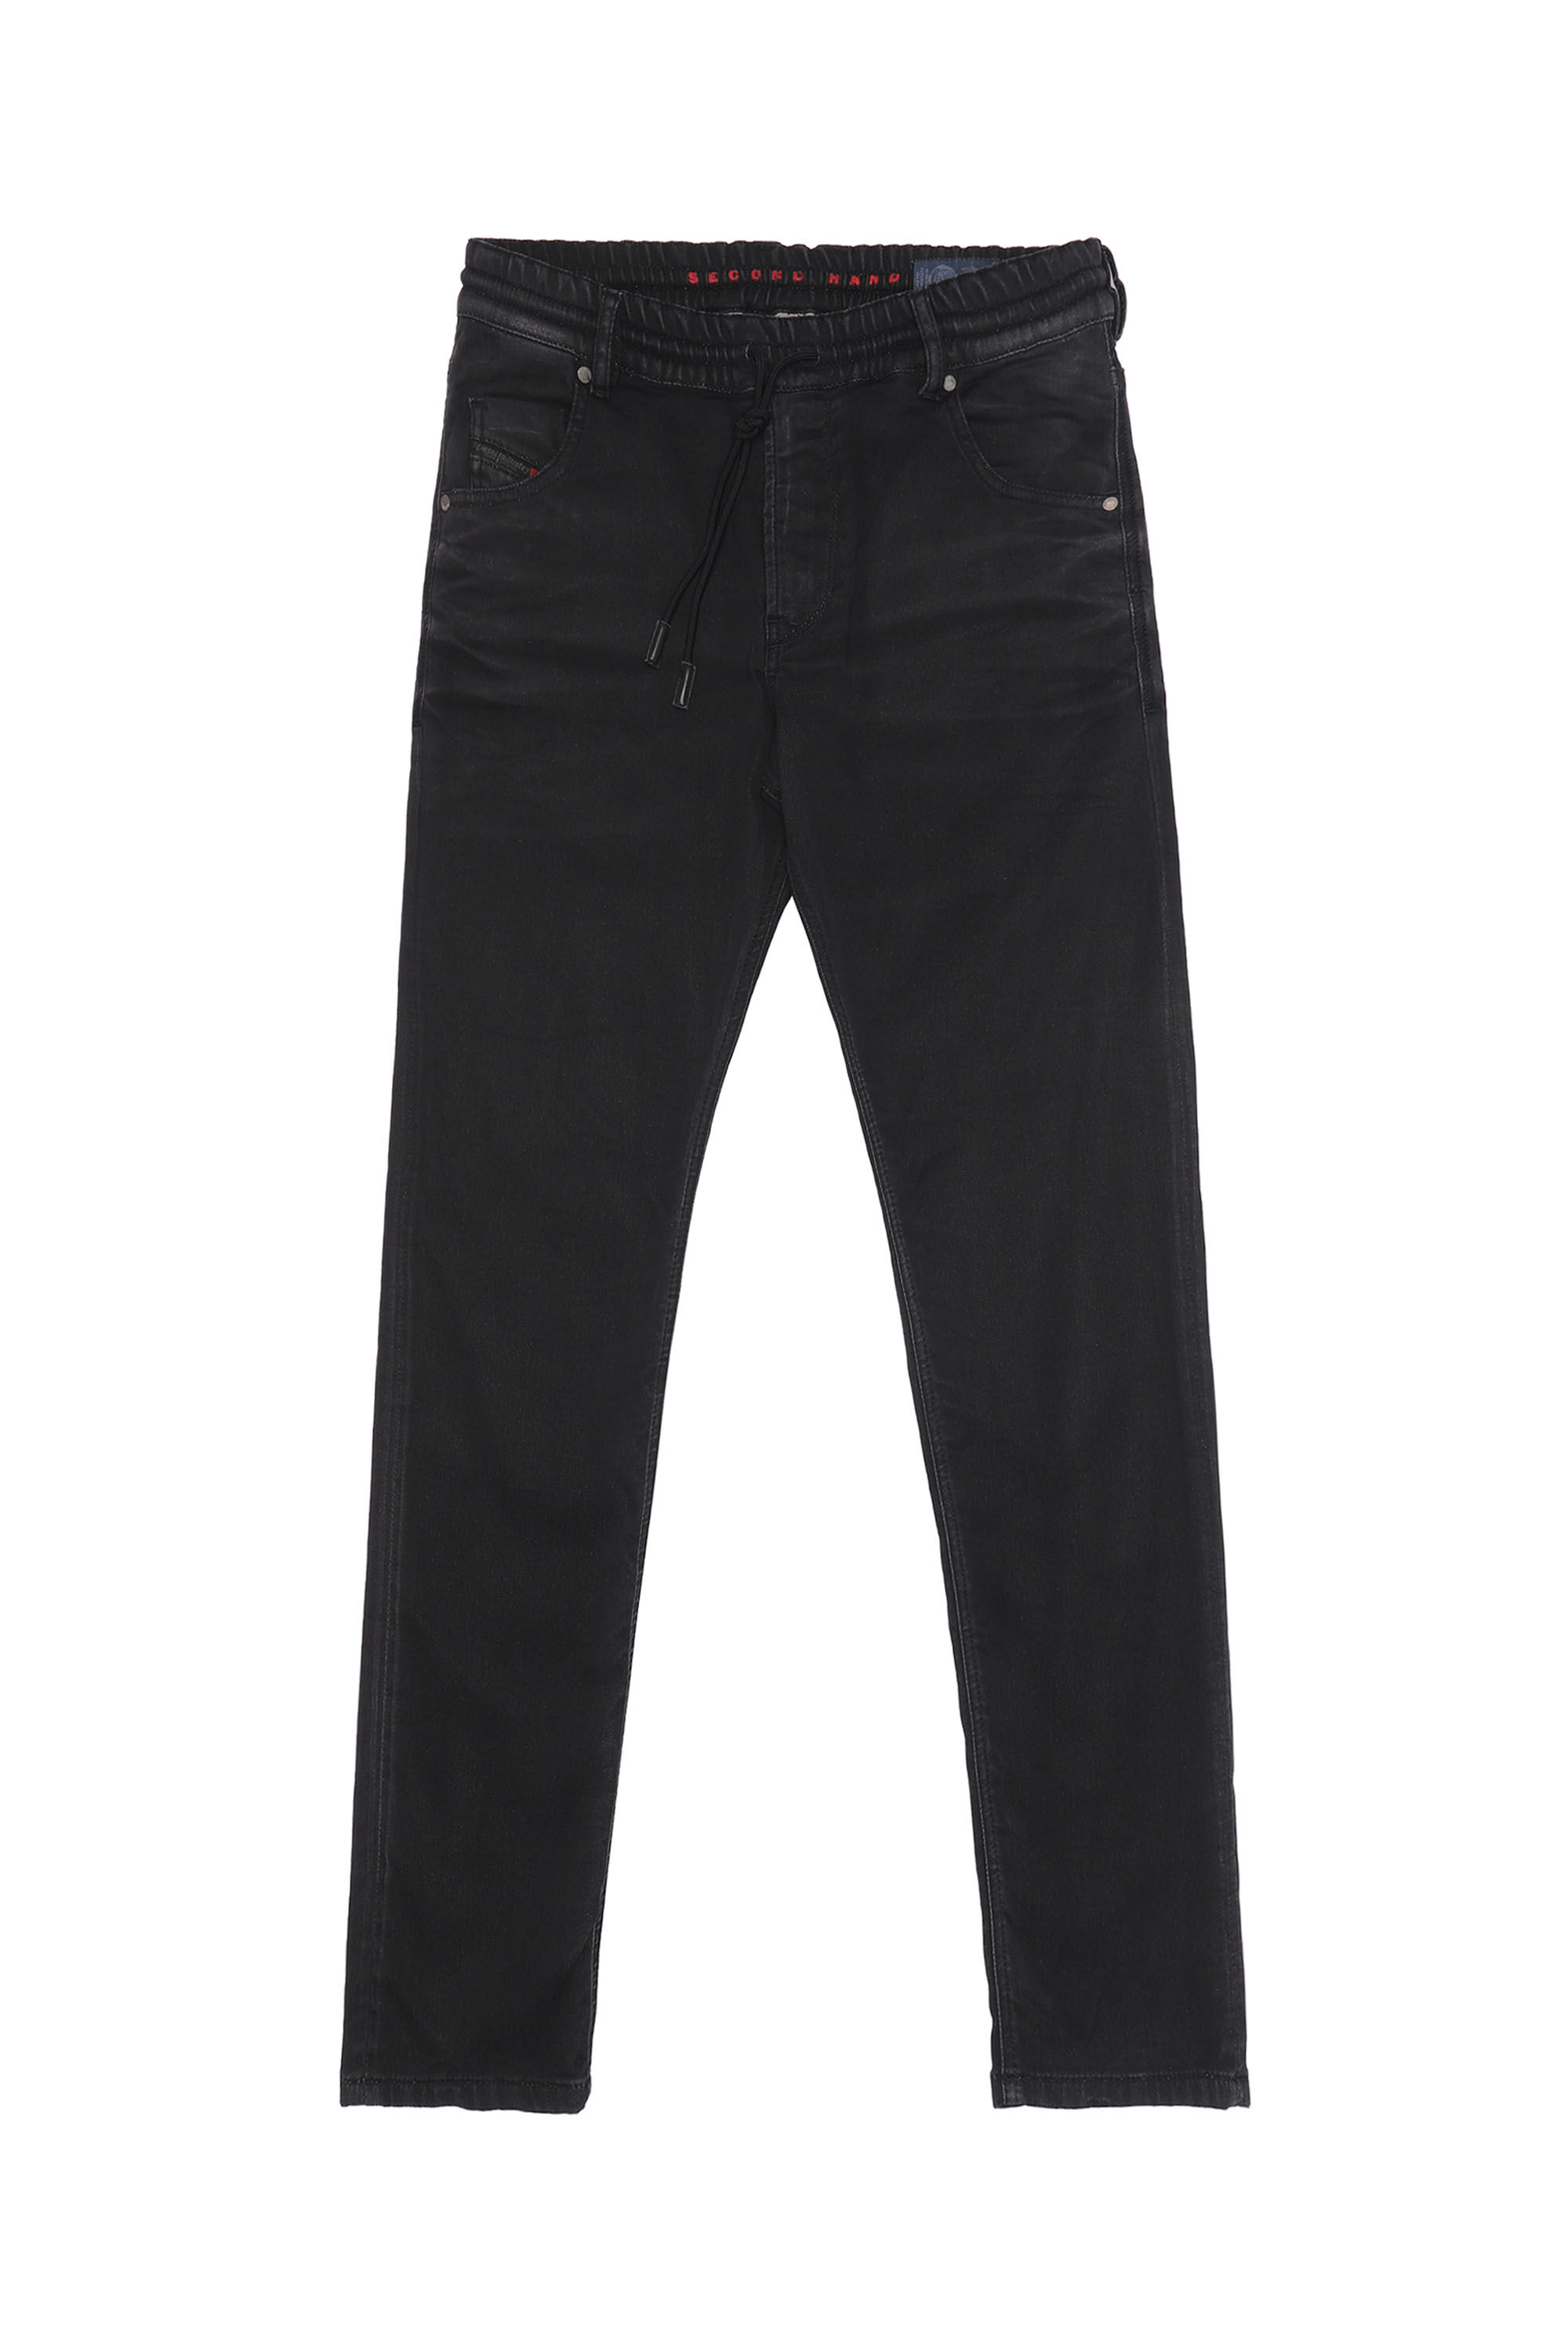 Diesel - KRAILEY JoggJeans®, Black/Dark grey - Image 1